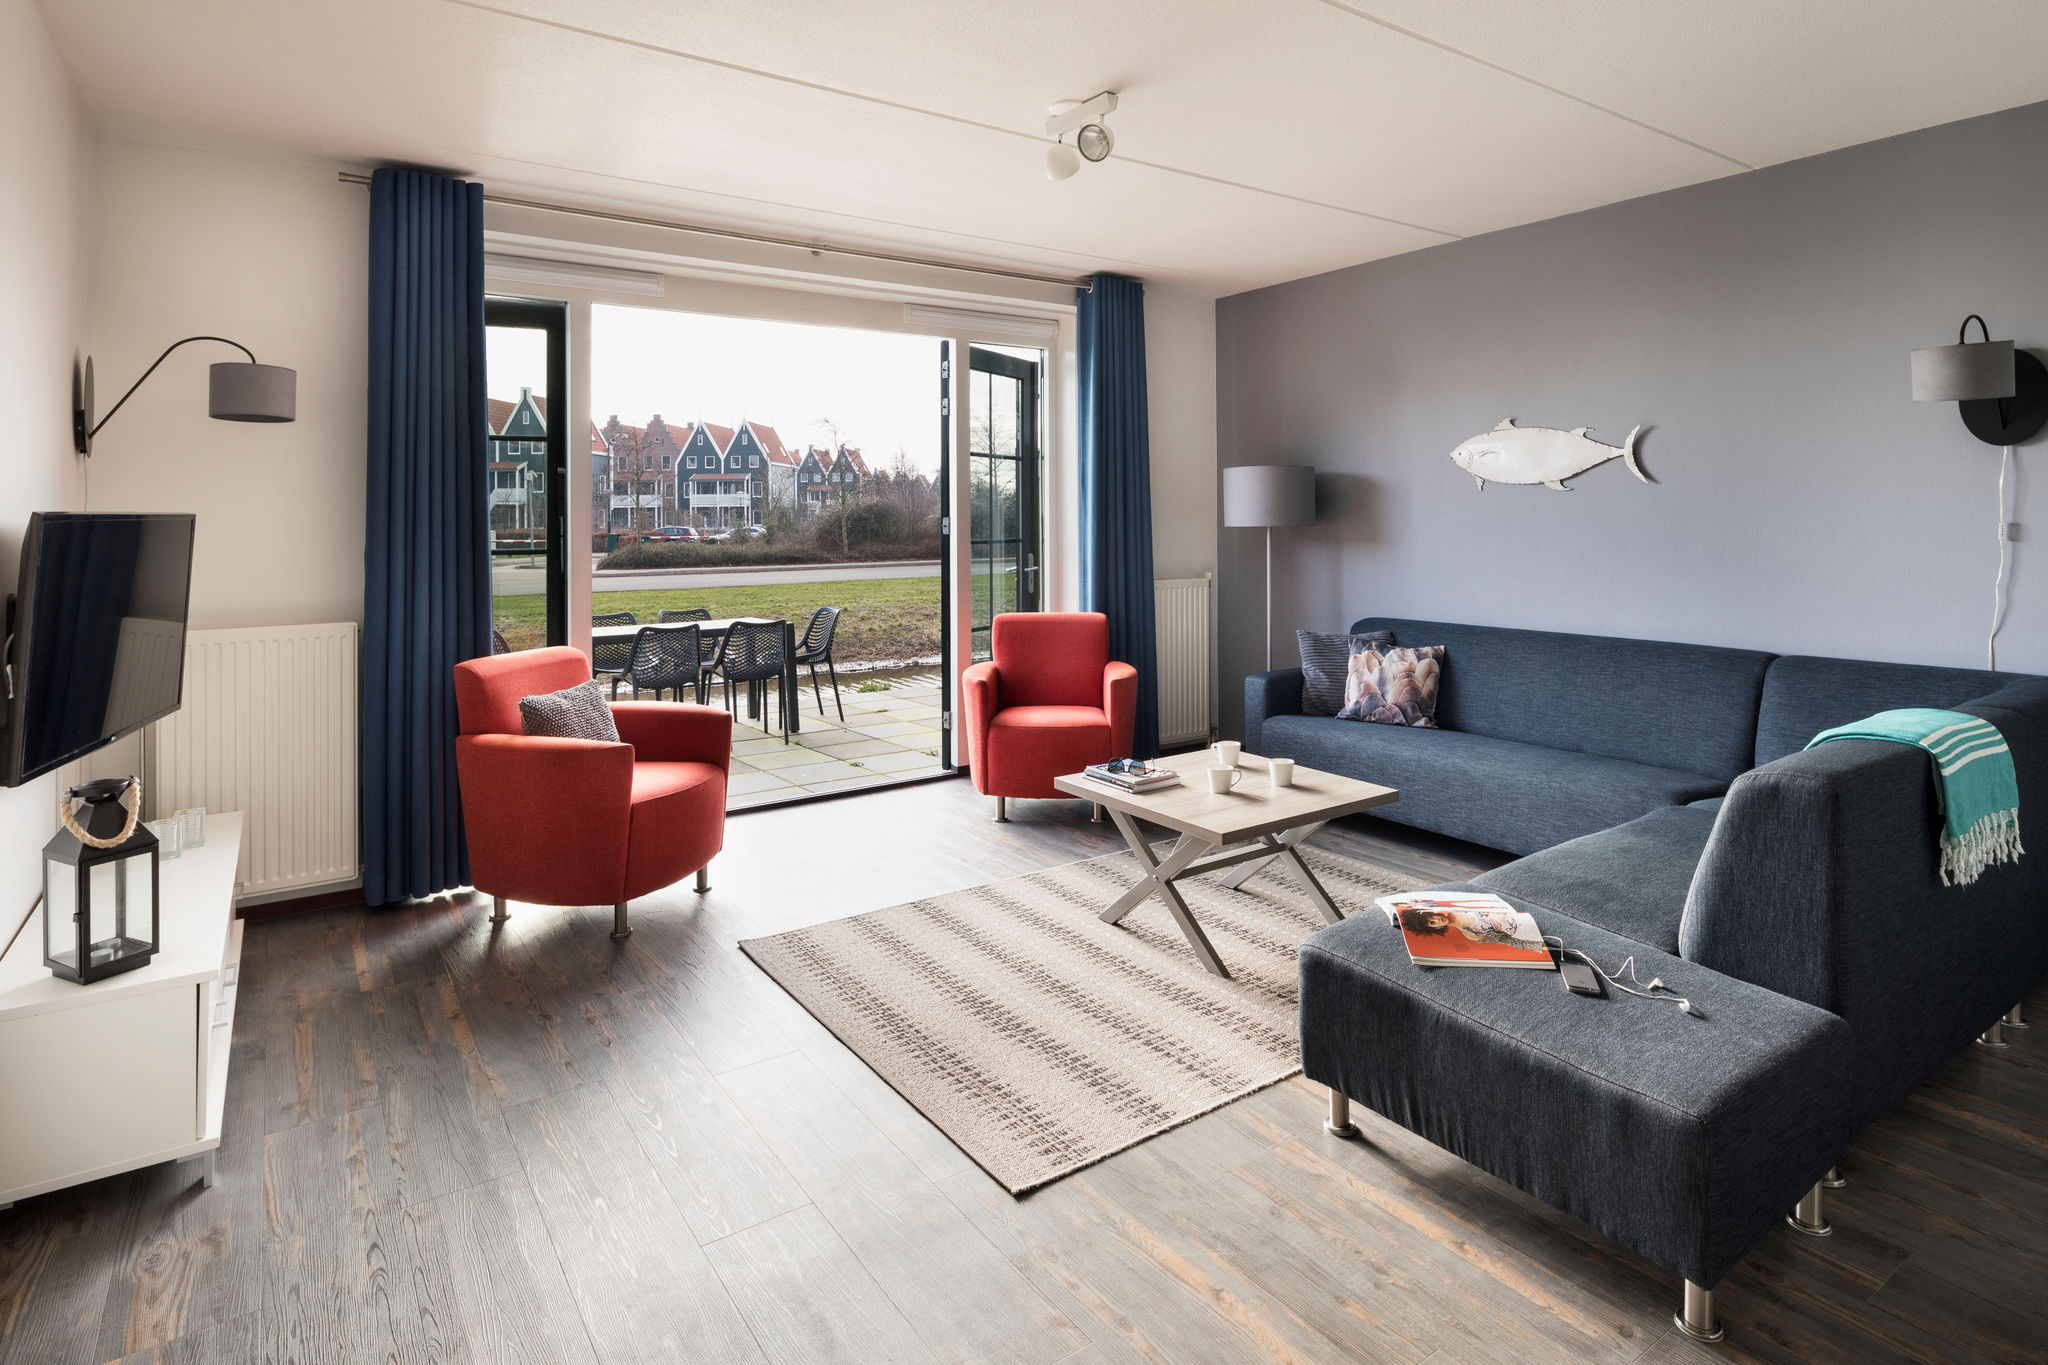 Gerestyld appartement in Volendamse stijl aan het Markermeer